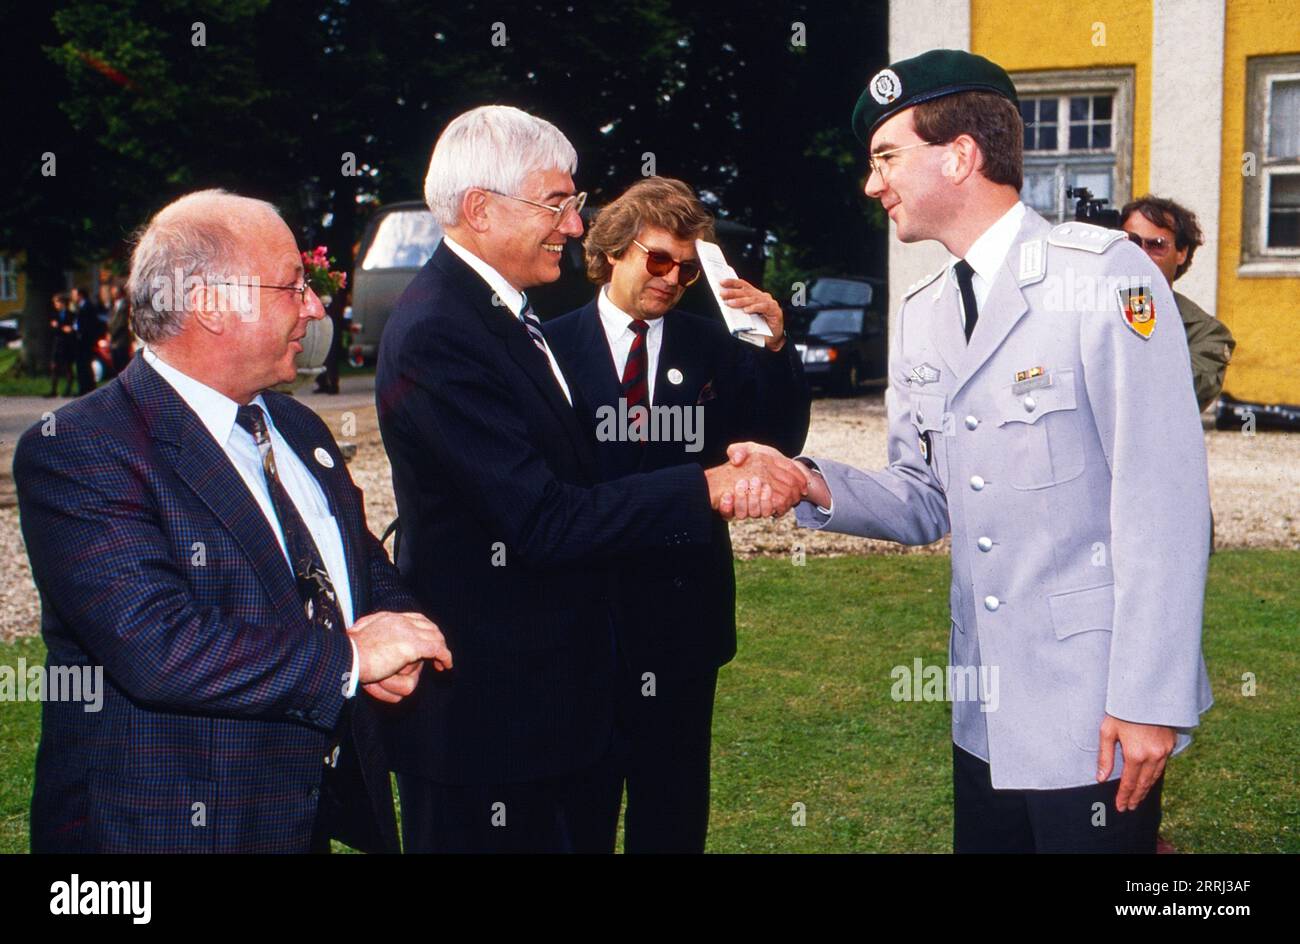 Norbert Blüm und Christian Schwarz Schilling (?) begrüßen einen Hauptmann des Heeresmusikkorps, Deutschland um 1991. Stock Photo